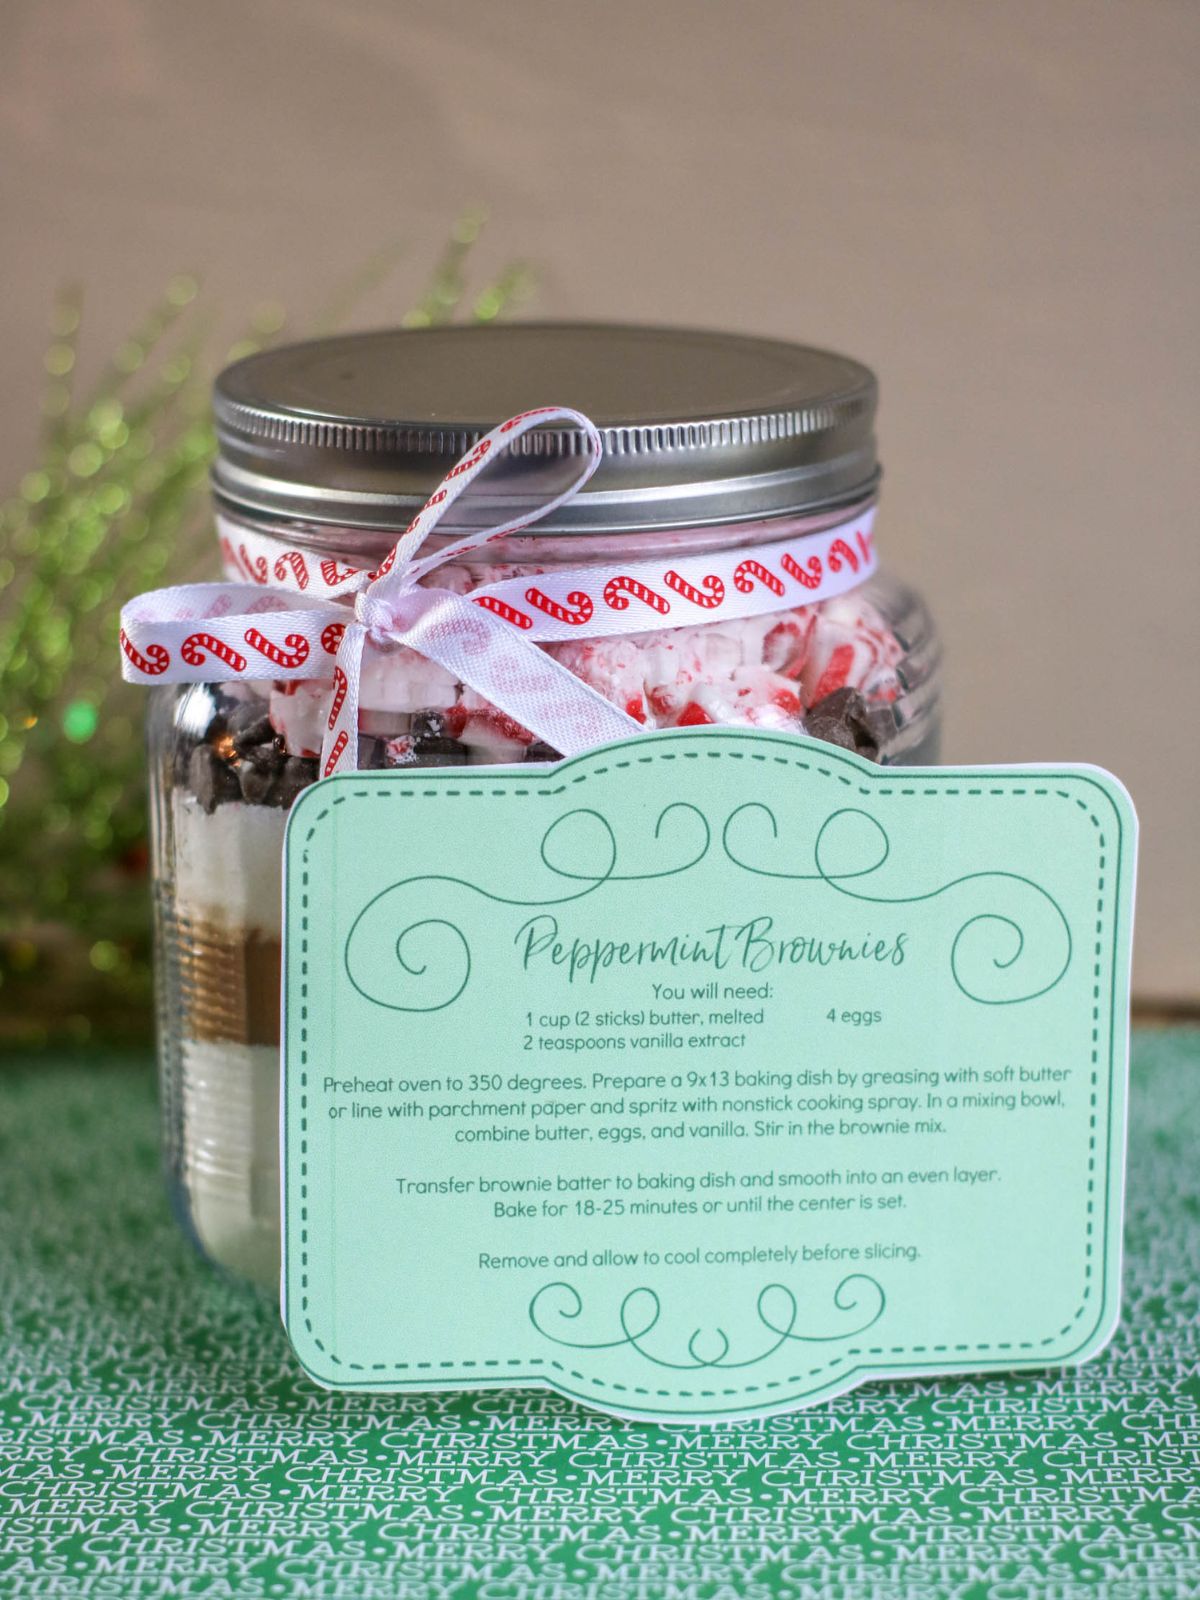 peppermint brownies in a jar.